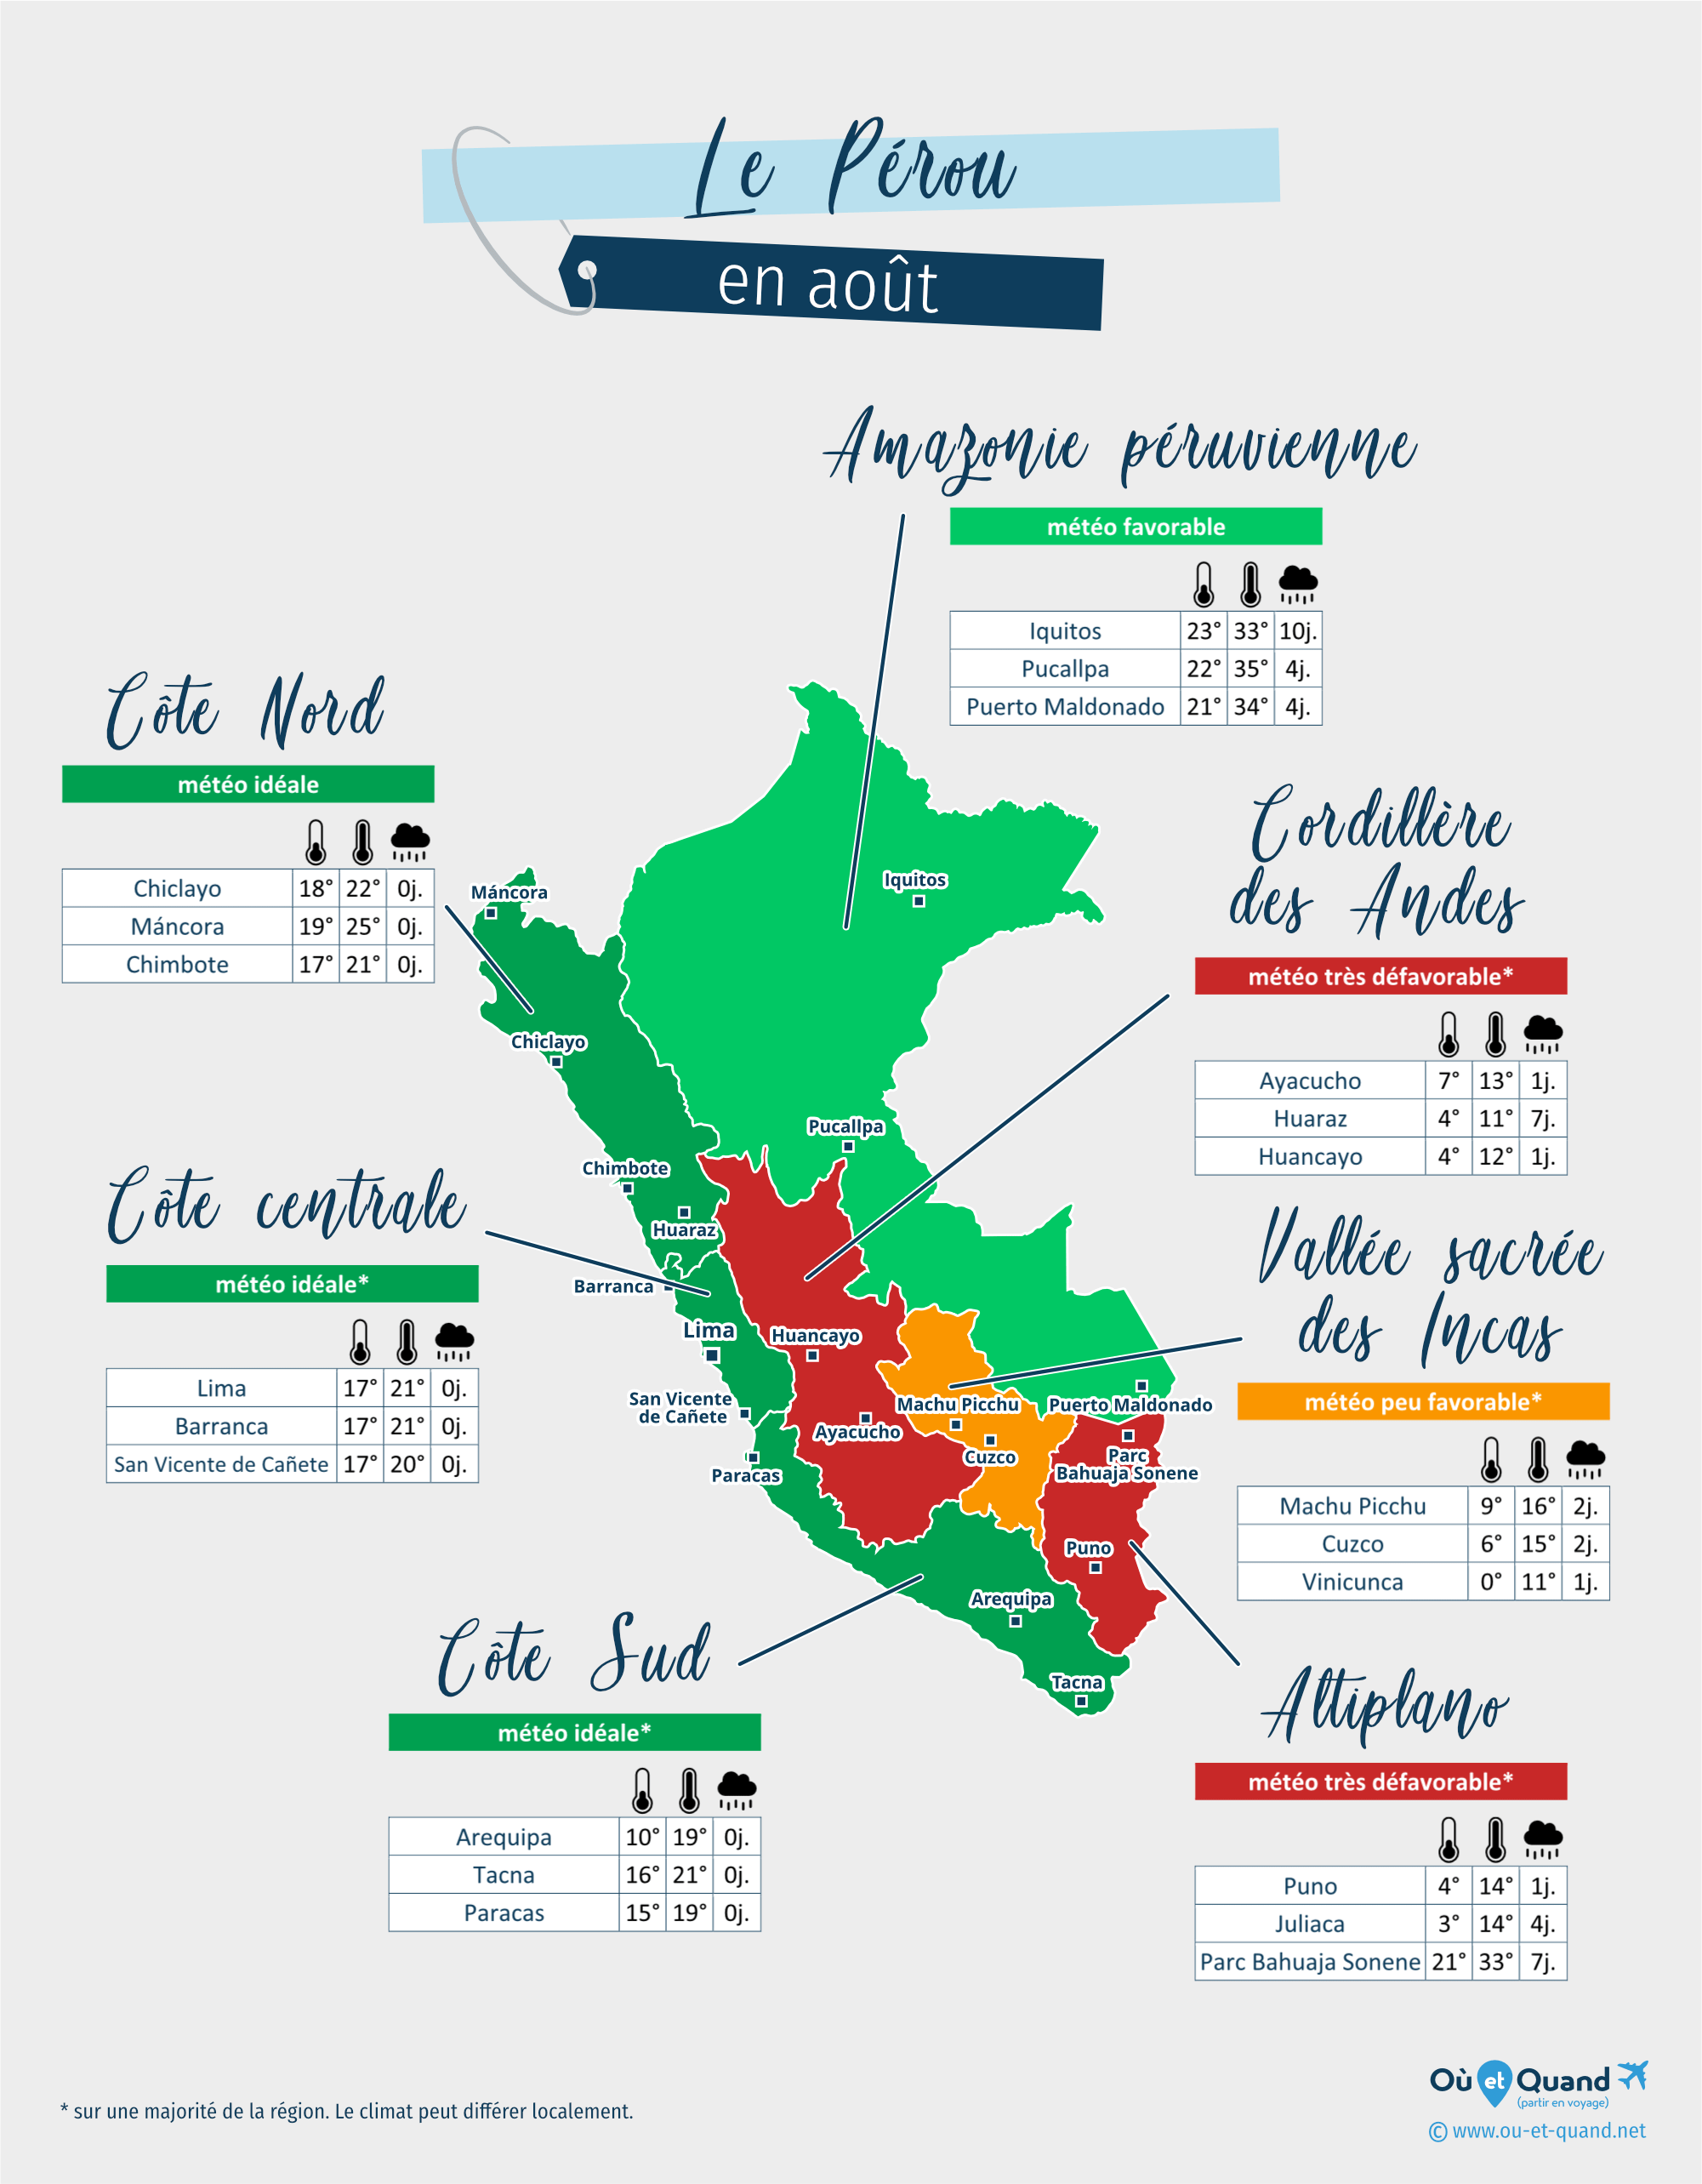 Carte de la météo en août dans les régions du Pérou